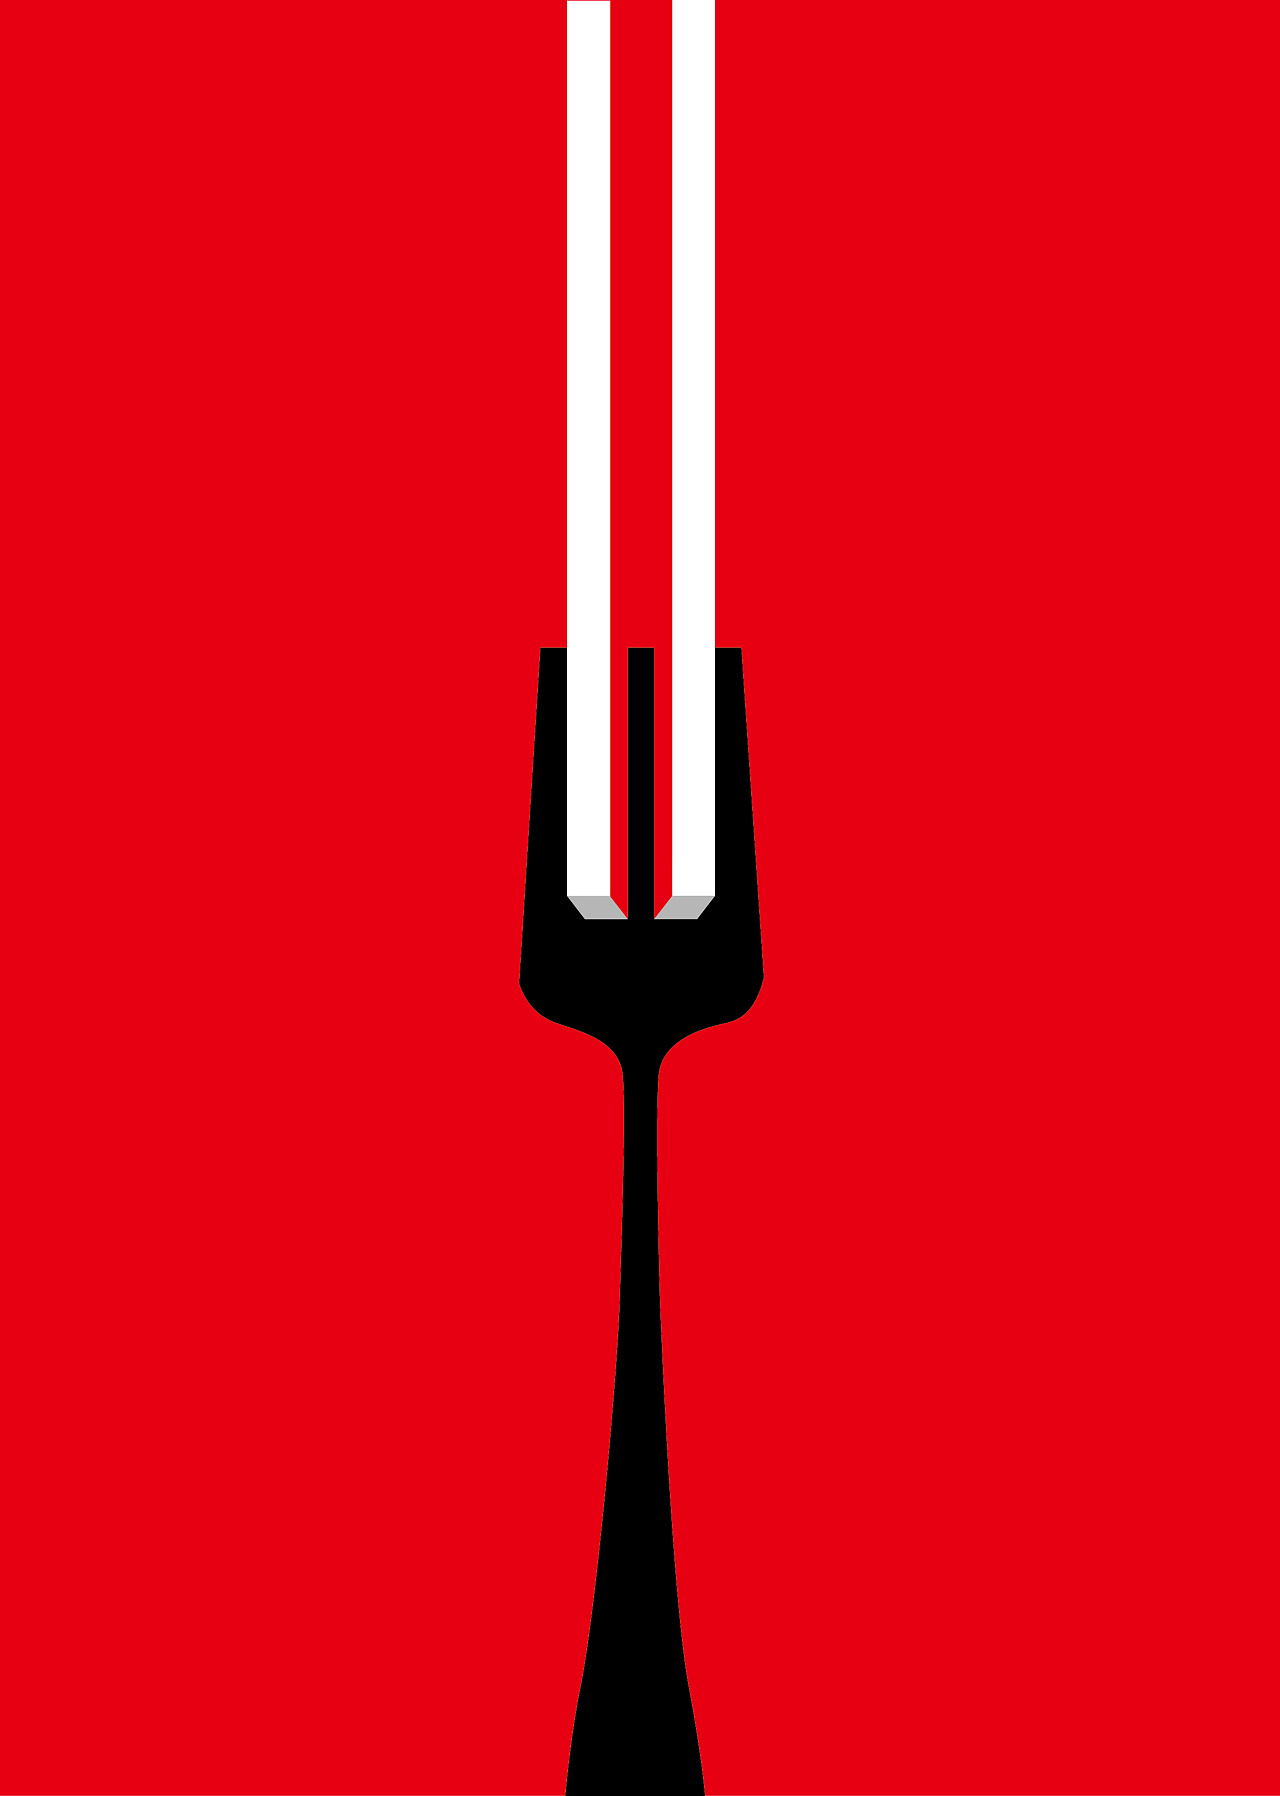 学图形创意的时候,做了一幅创意图,东方的筷子和西方的叉子